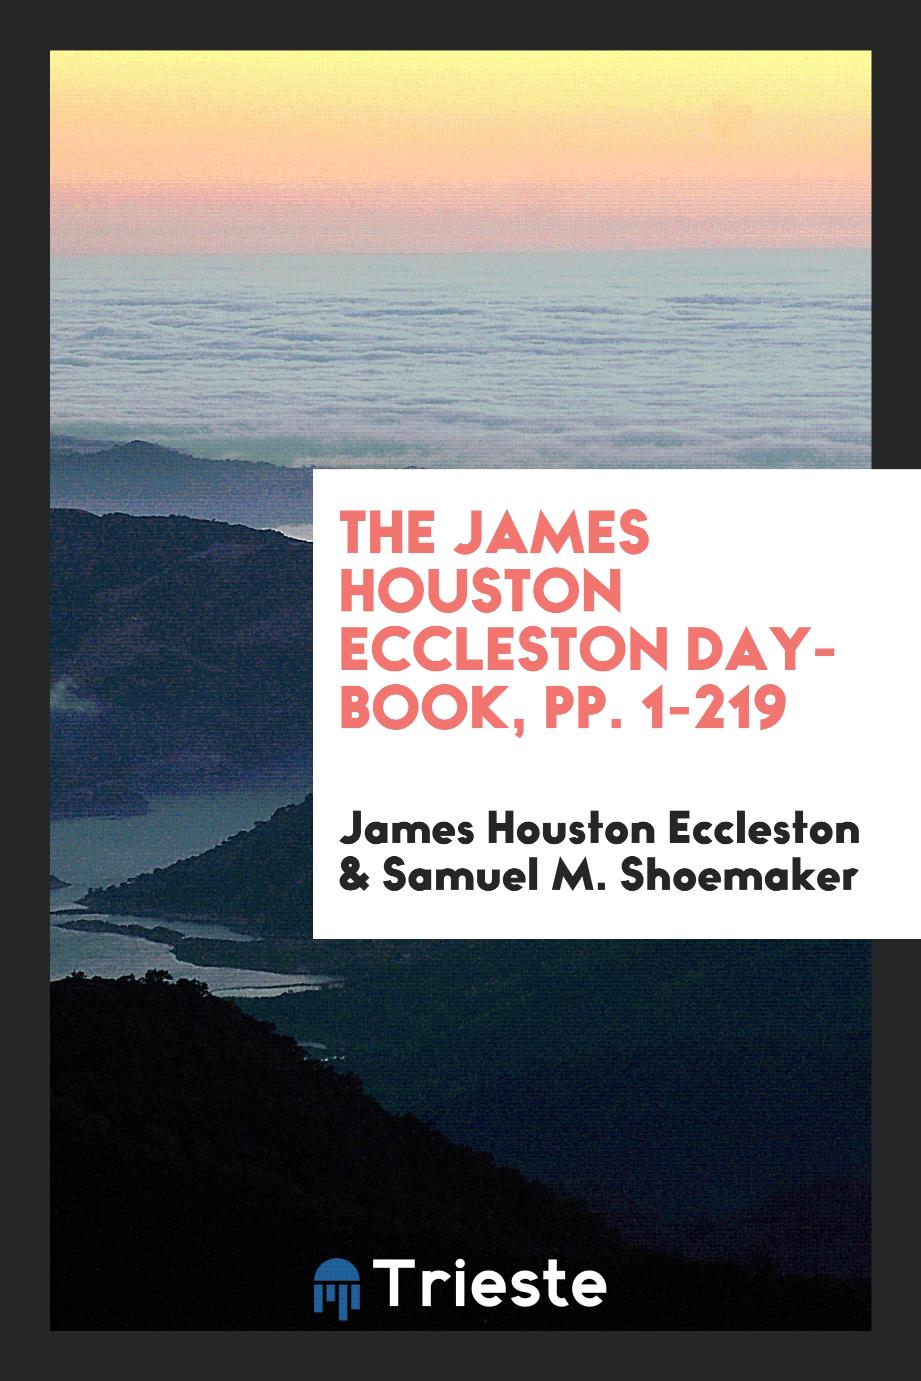 The James Houston Eccleston day-book, pp. 1-219